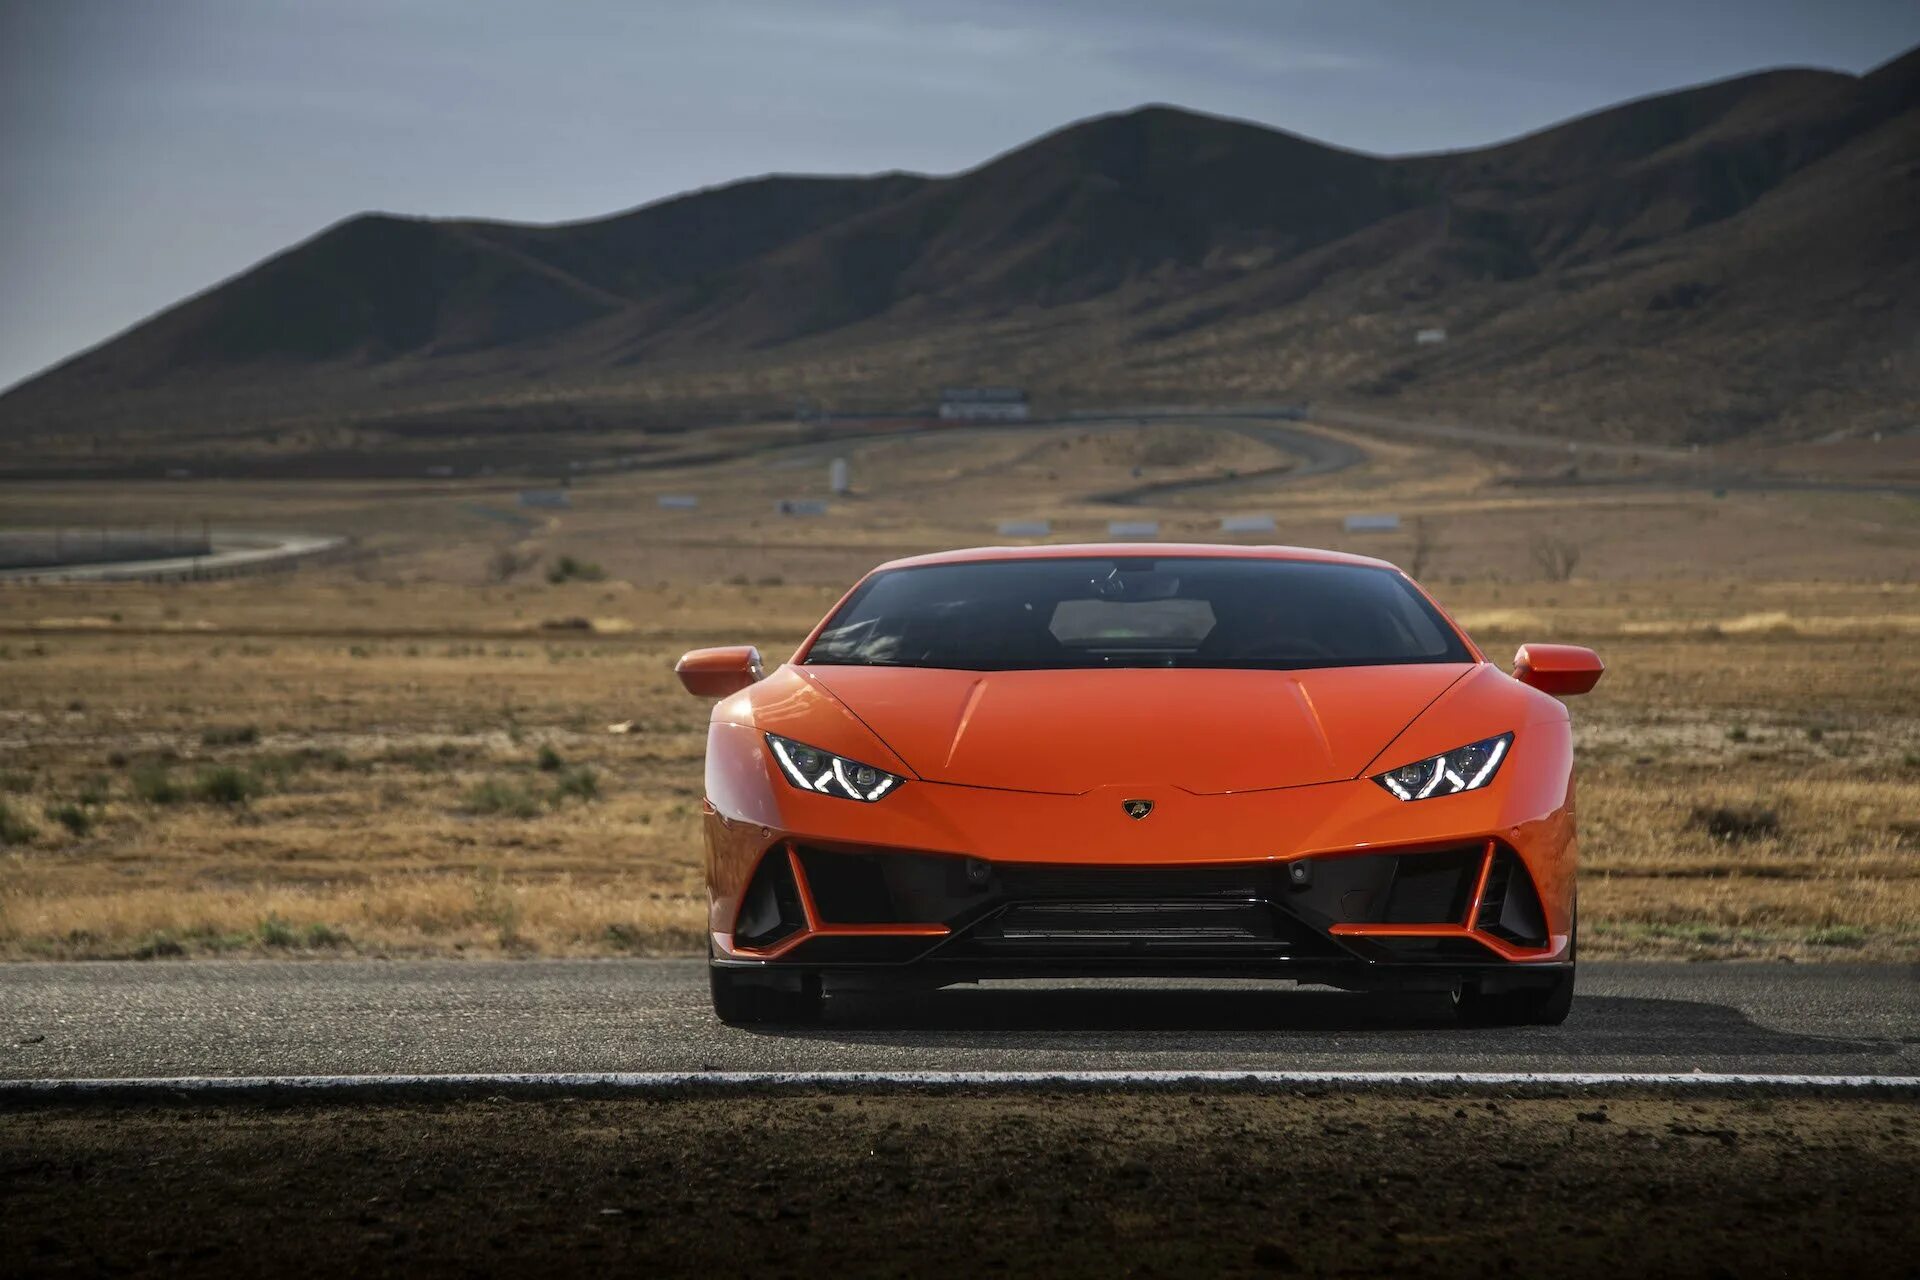 Хуракан эво. Lamborghini Huracan EVO оранжевый. Ламборджини Хуракан 2020 оранжевый. Lamborghini Huracan EVO 2020 оранжевый. Lamborghini Huracan EVO 2021 Orange.